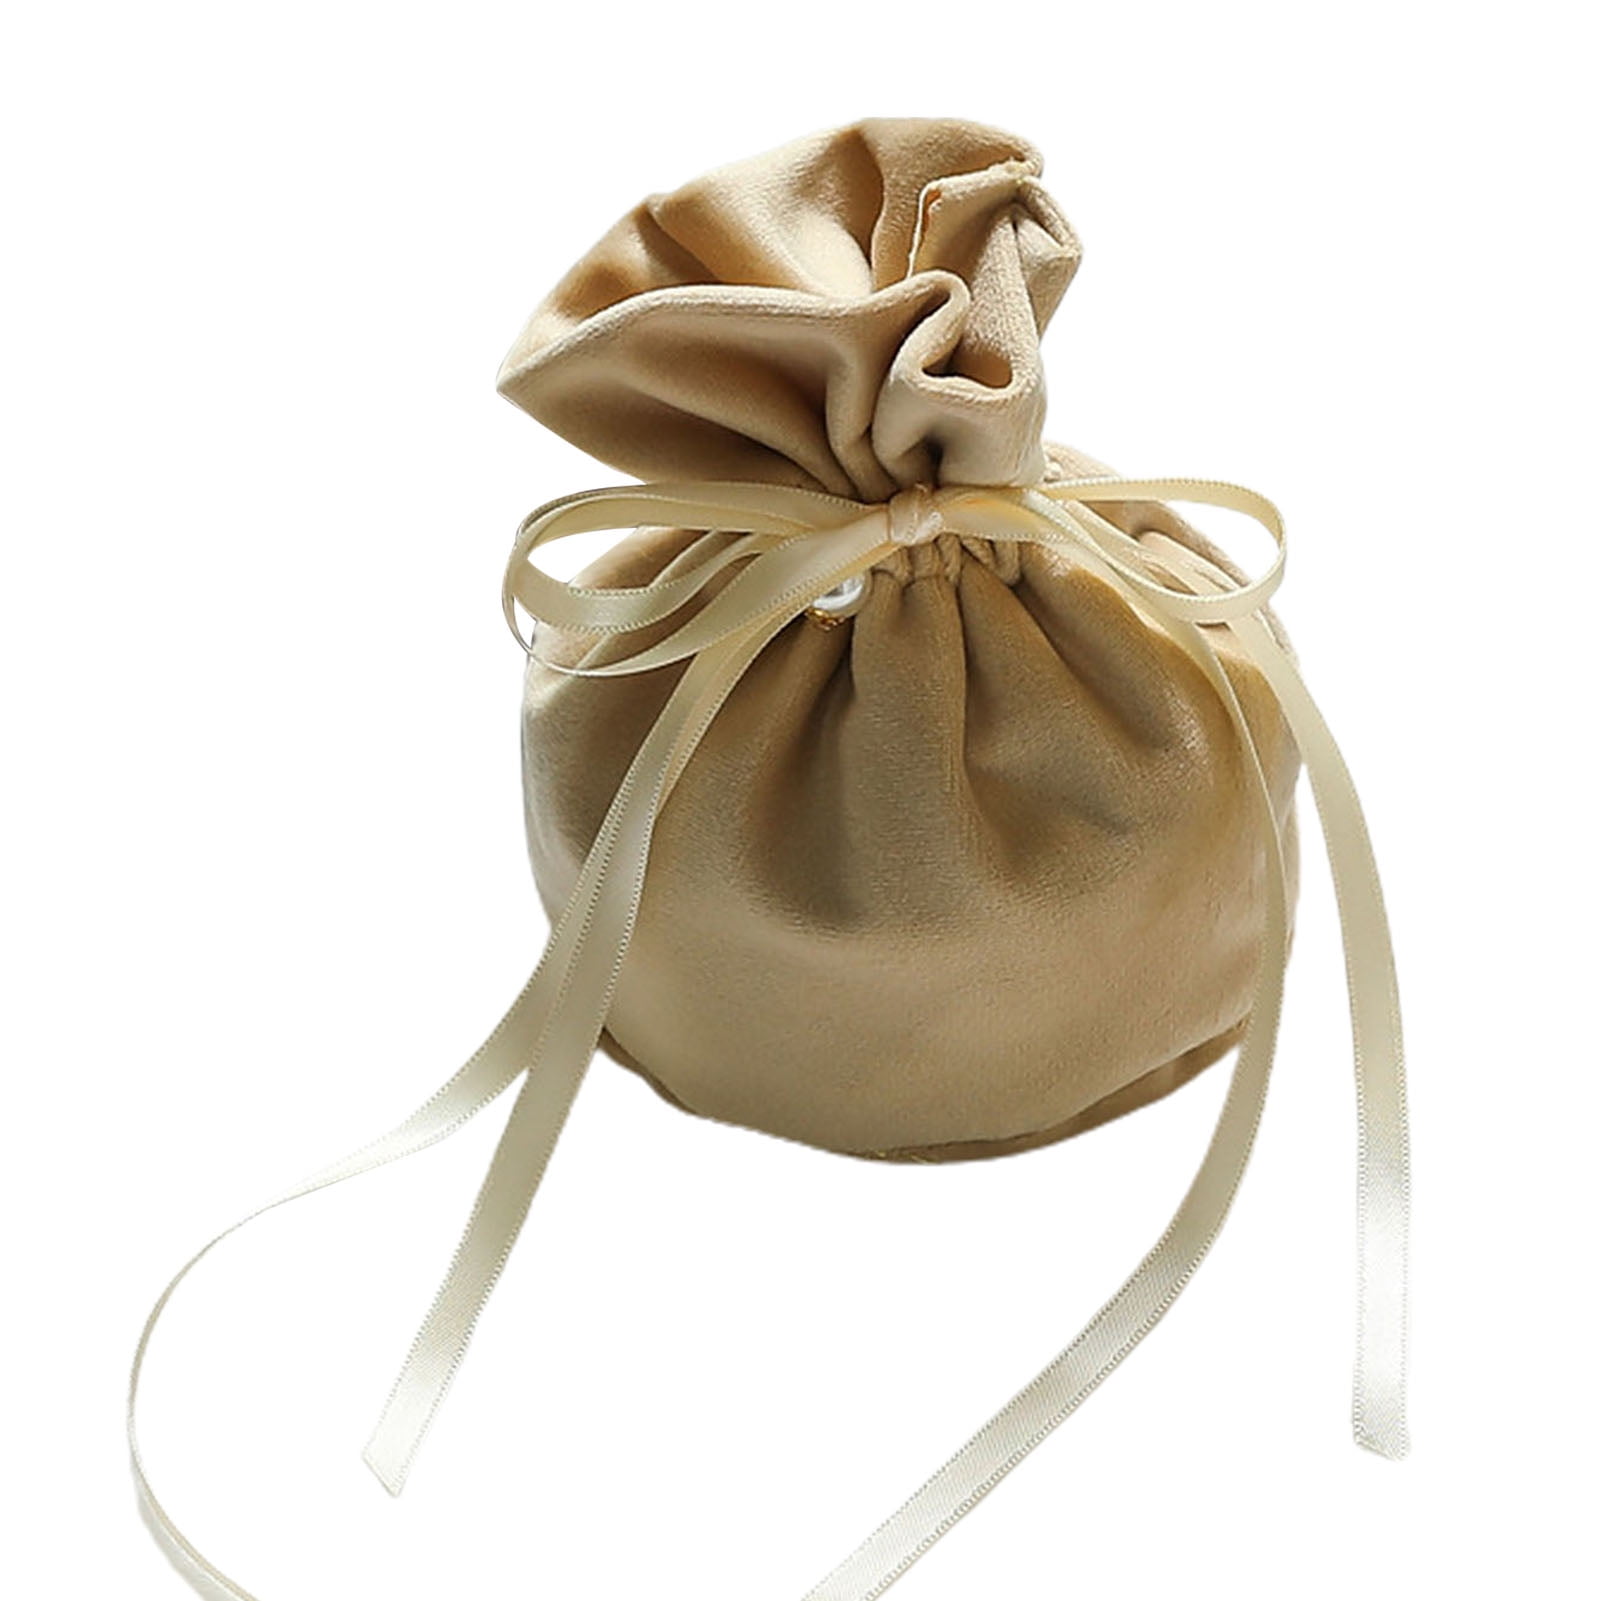 HRX Package Soft Velvet Gift Bags, 5.1x7.8 inch Velvet Drawstring